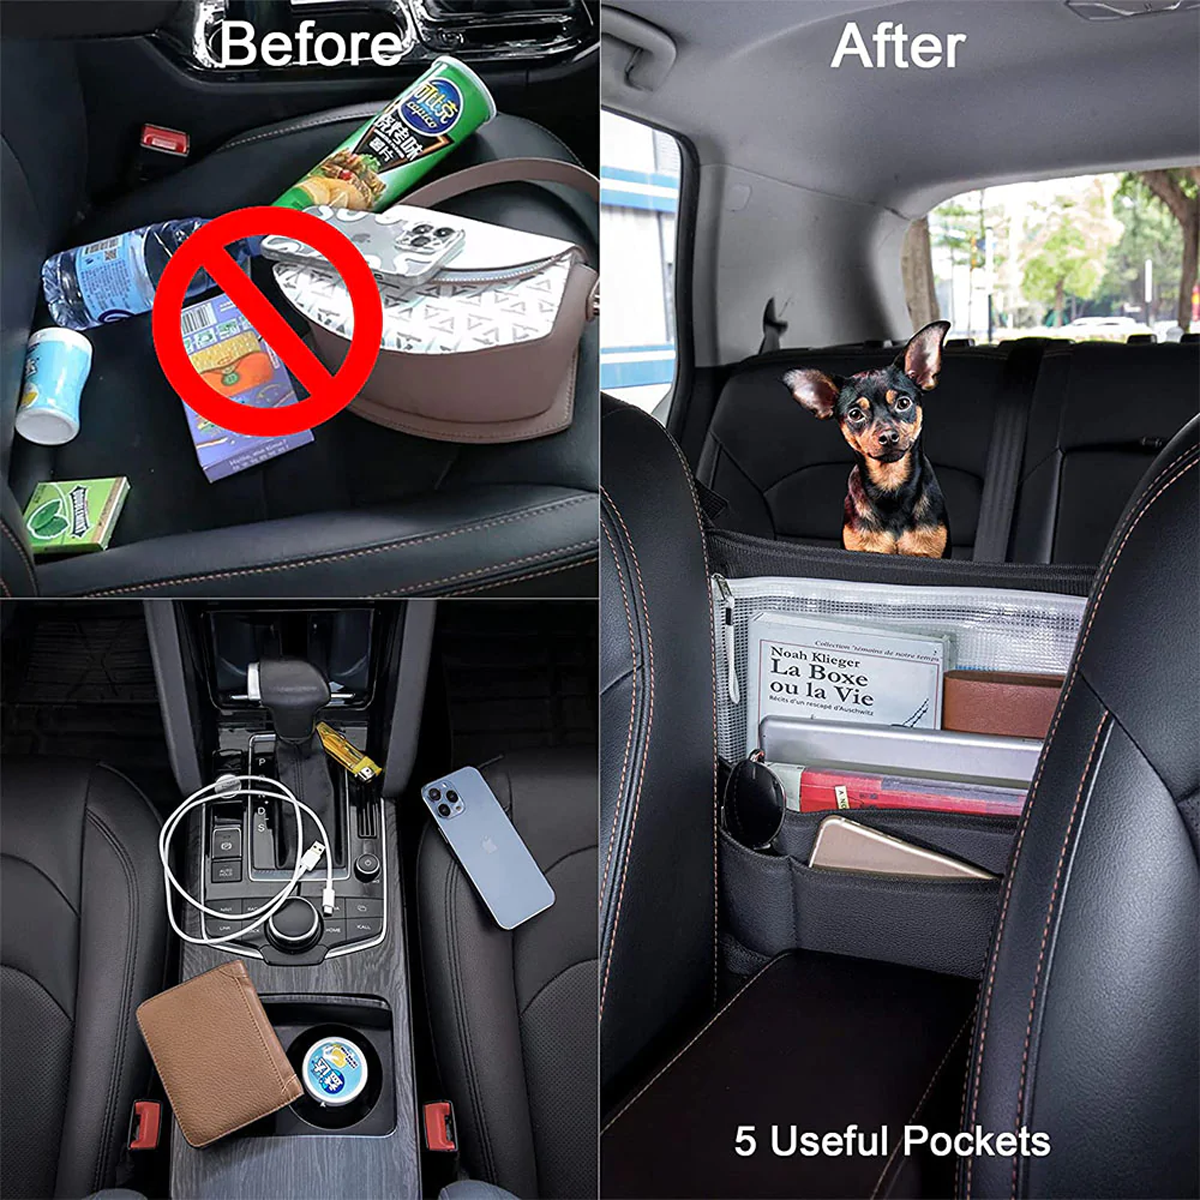 Car Purse Holder for Car Handbag Holder Between Seats Premium PU Leather, Custom Fit For Car, Hanging Car Purse Storage Pocket Back Seat Pet Barrier WADR223